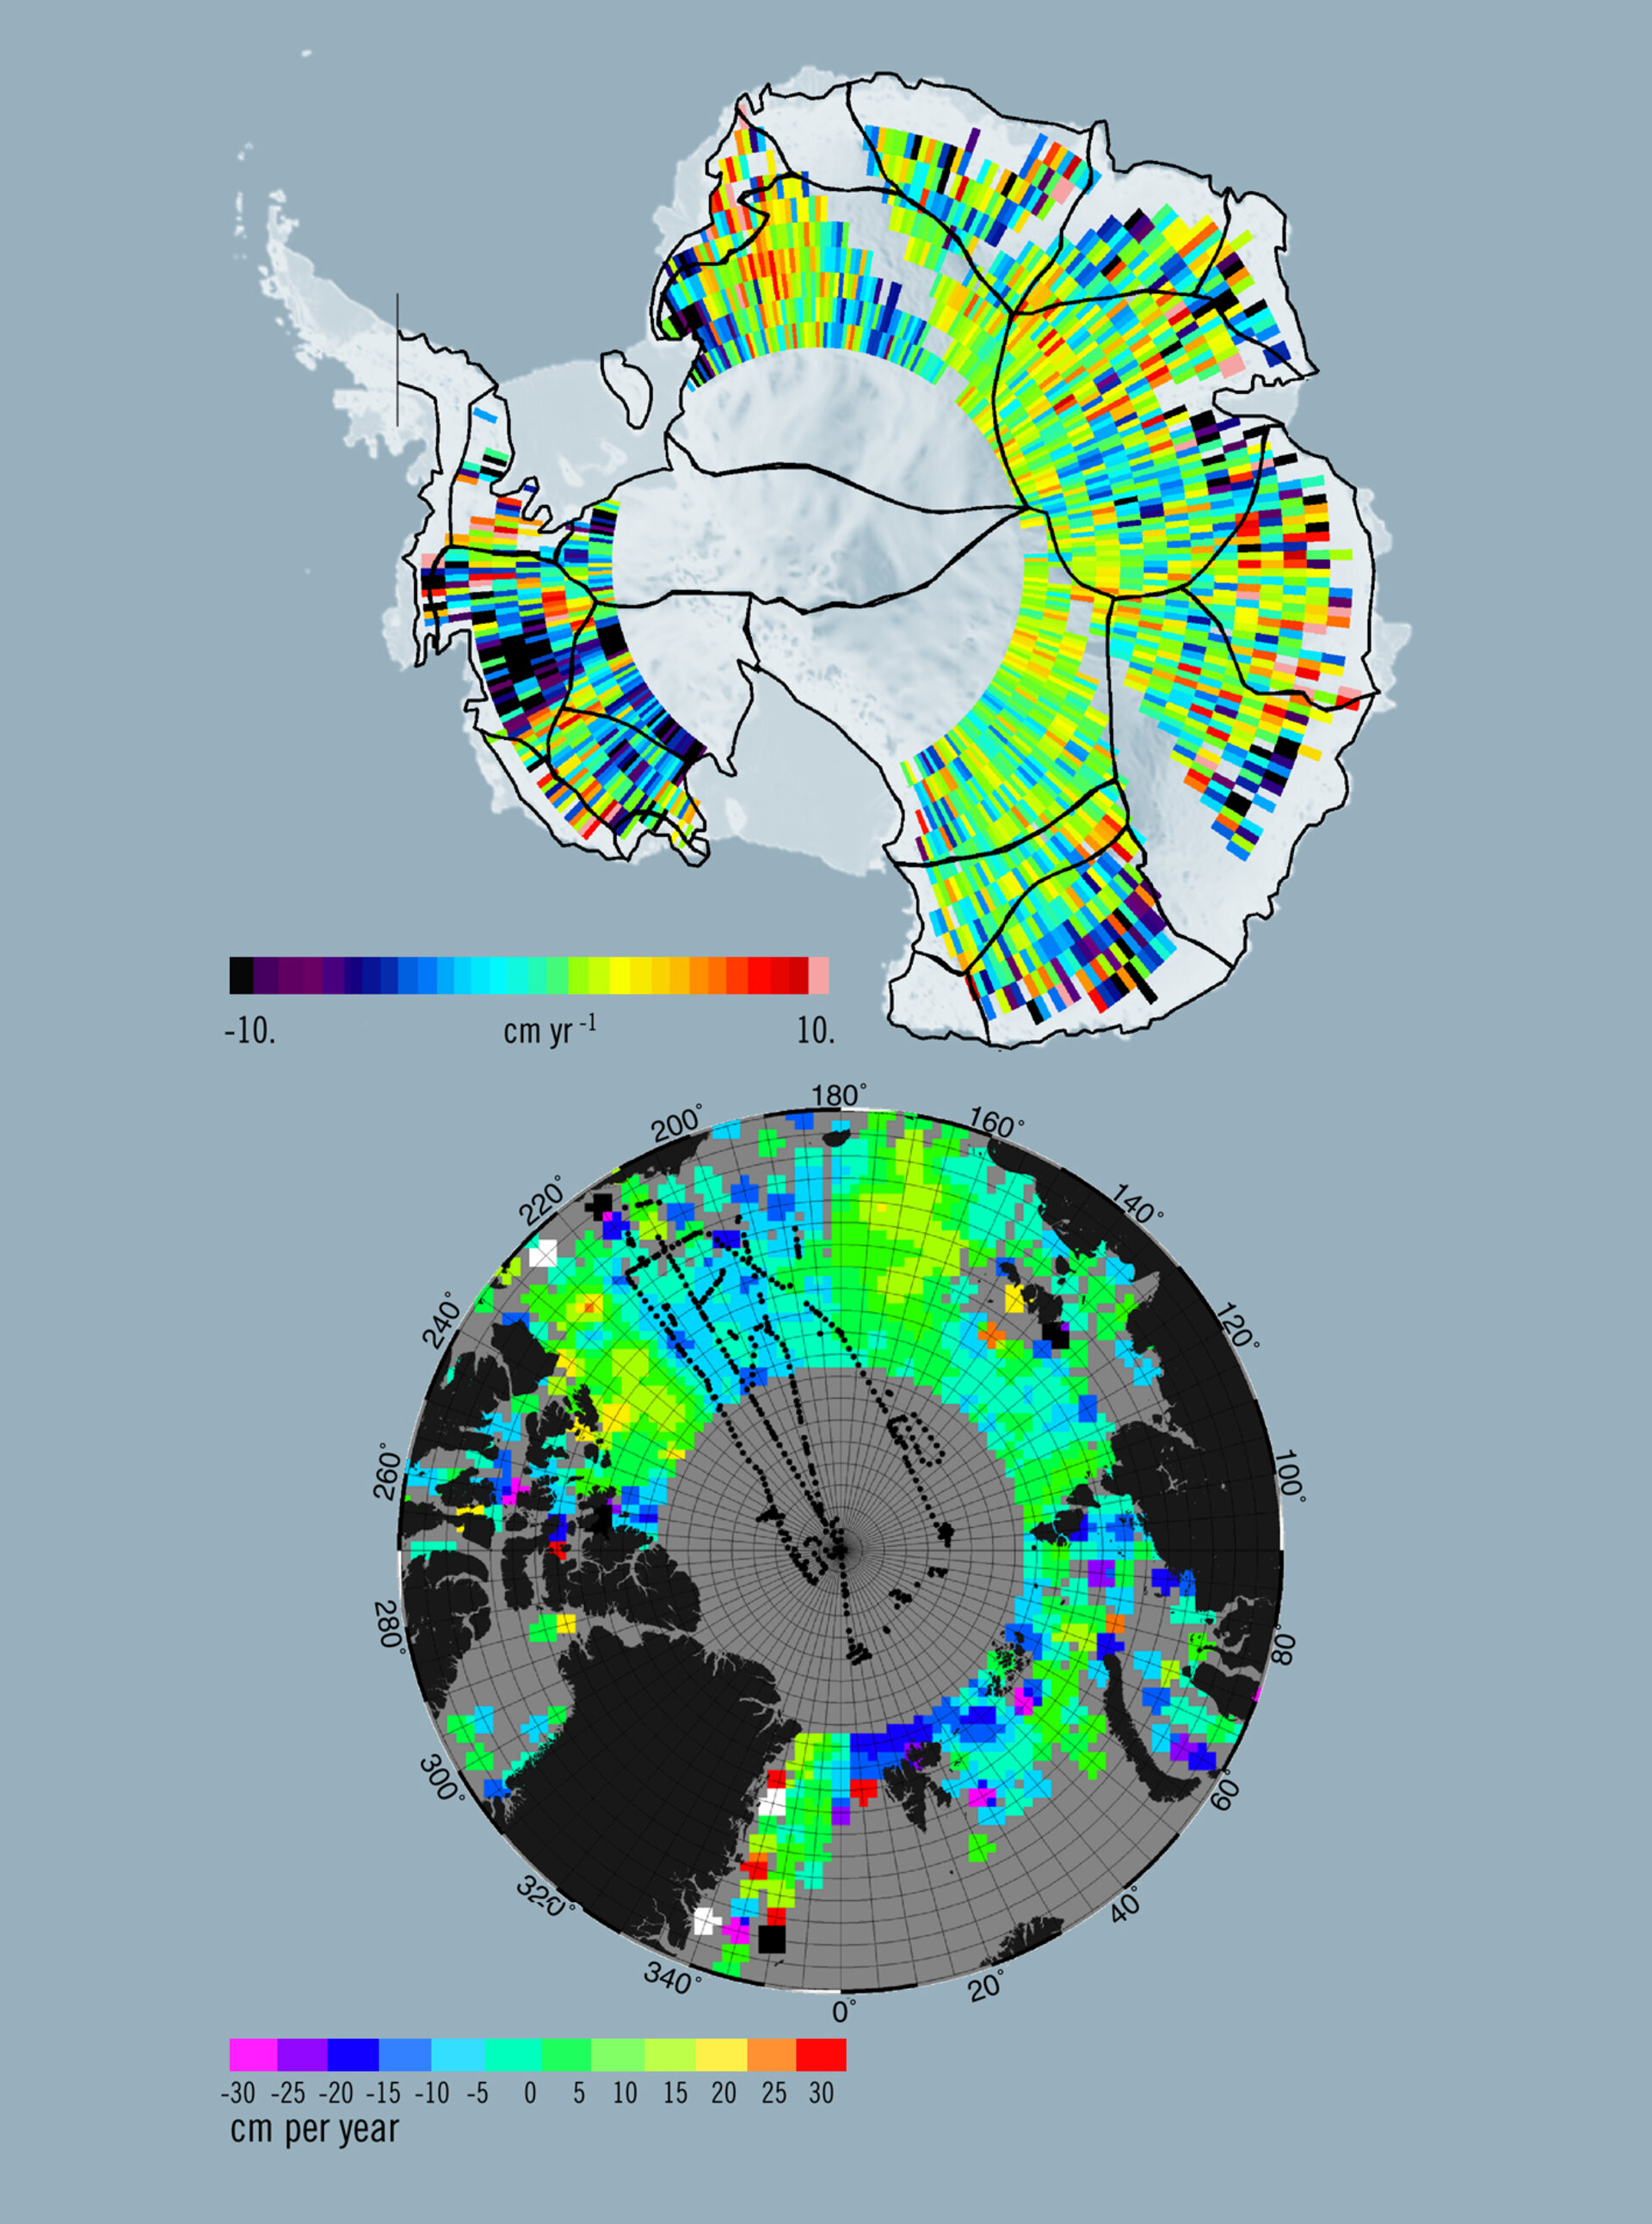 Eine Topographie des Antartiseises und seiner geschätzten Dicke